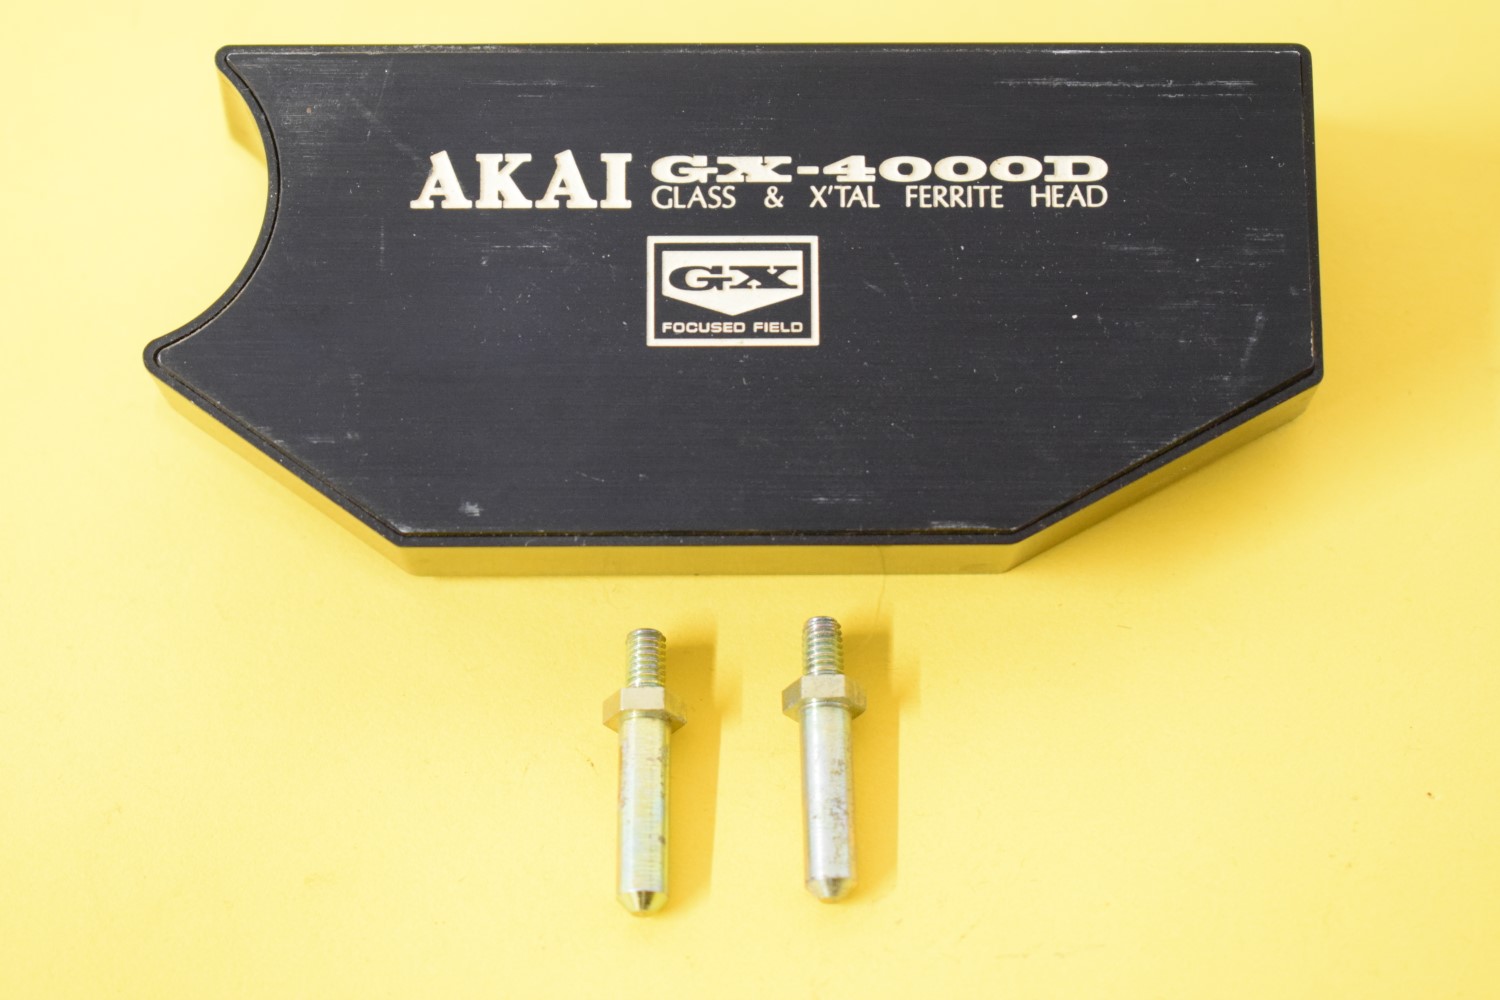 Akai GX-4000D Zwart – Koppen beschermdeksel / Koppenkapje